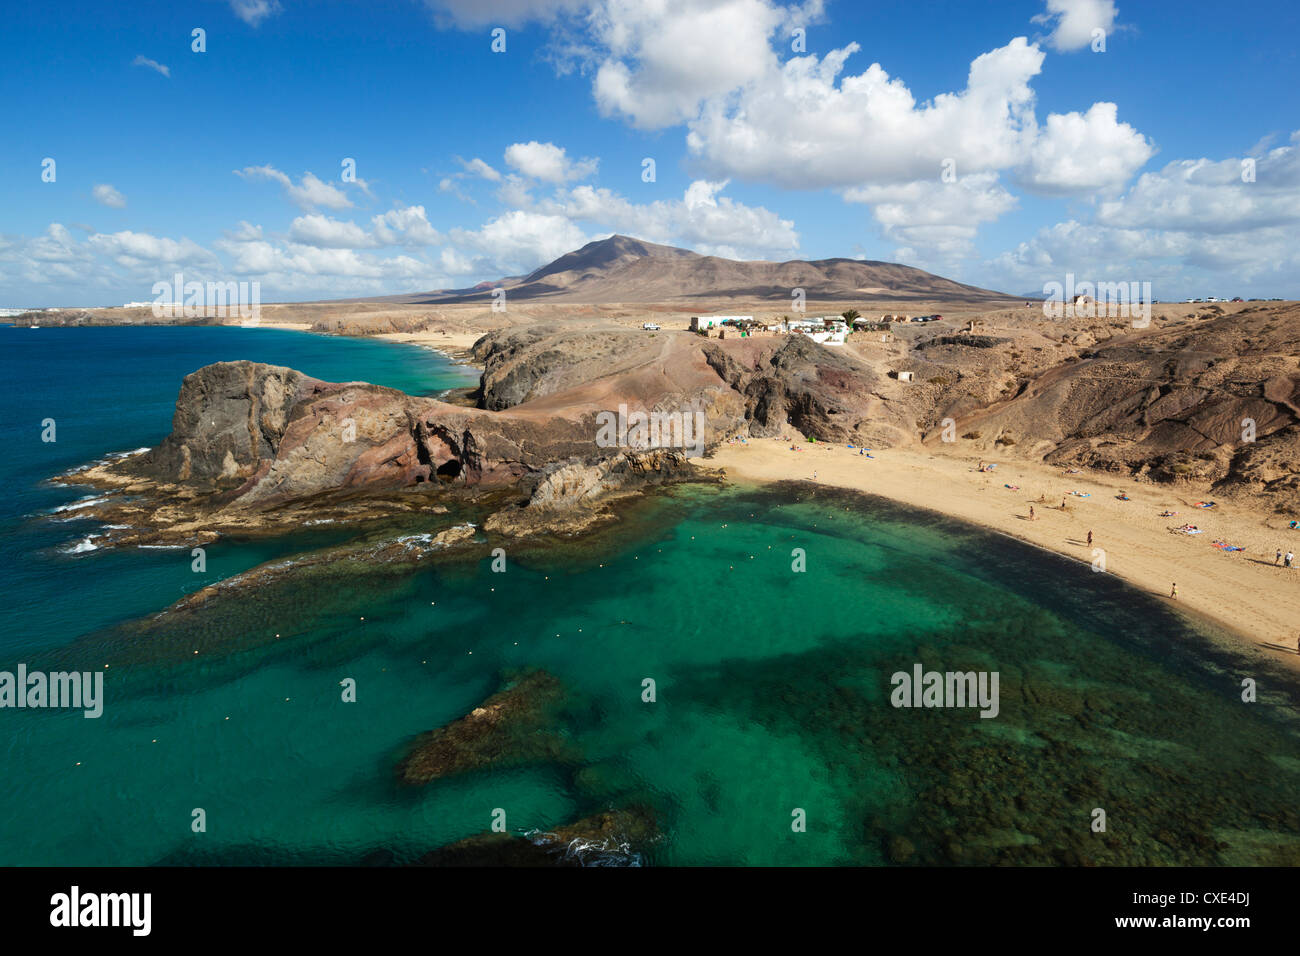 La playa del Papagayo, cerca de Playa Blanca, Lanzarote, Islas Canarias, España Foto de stock